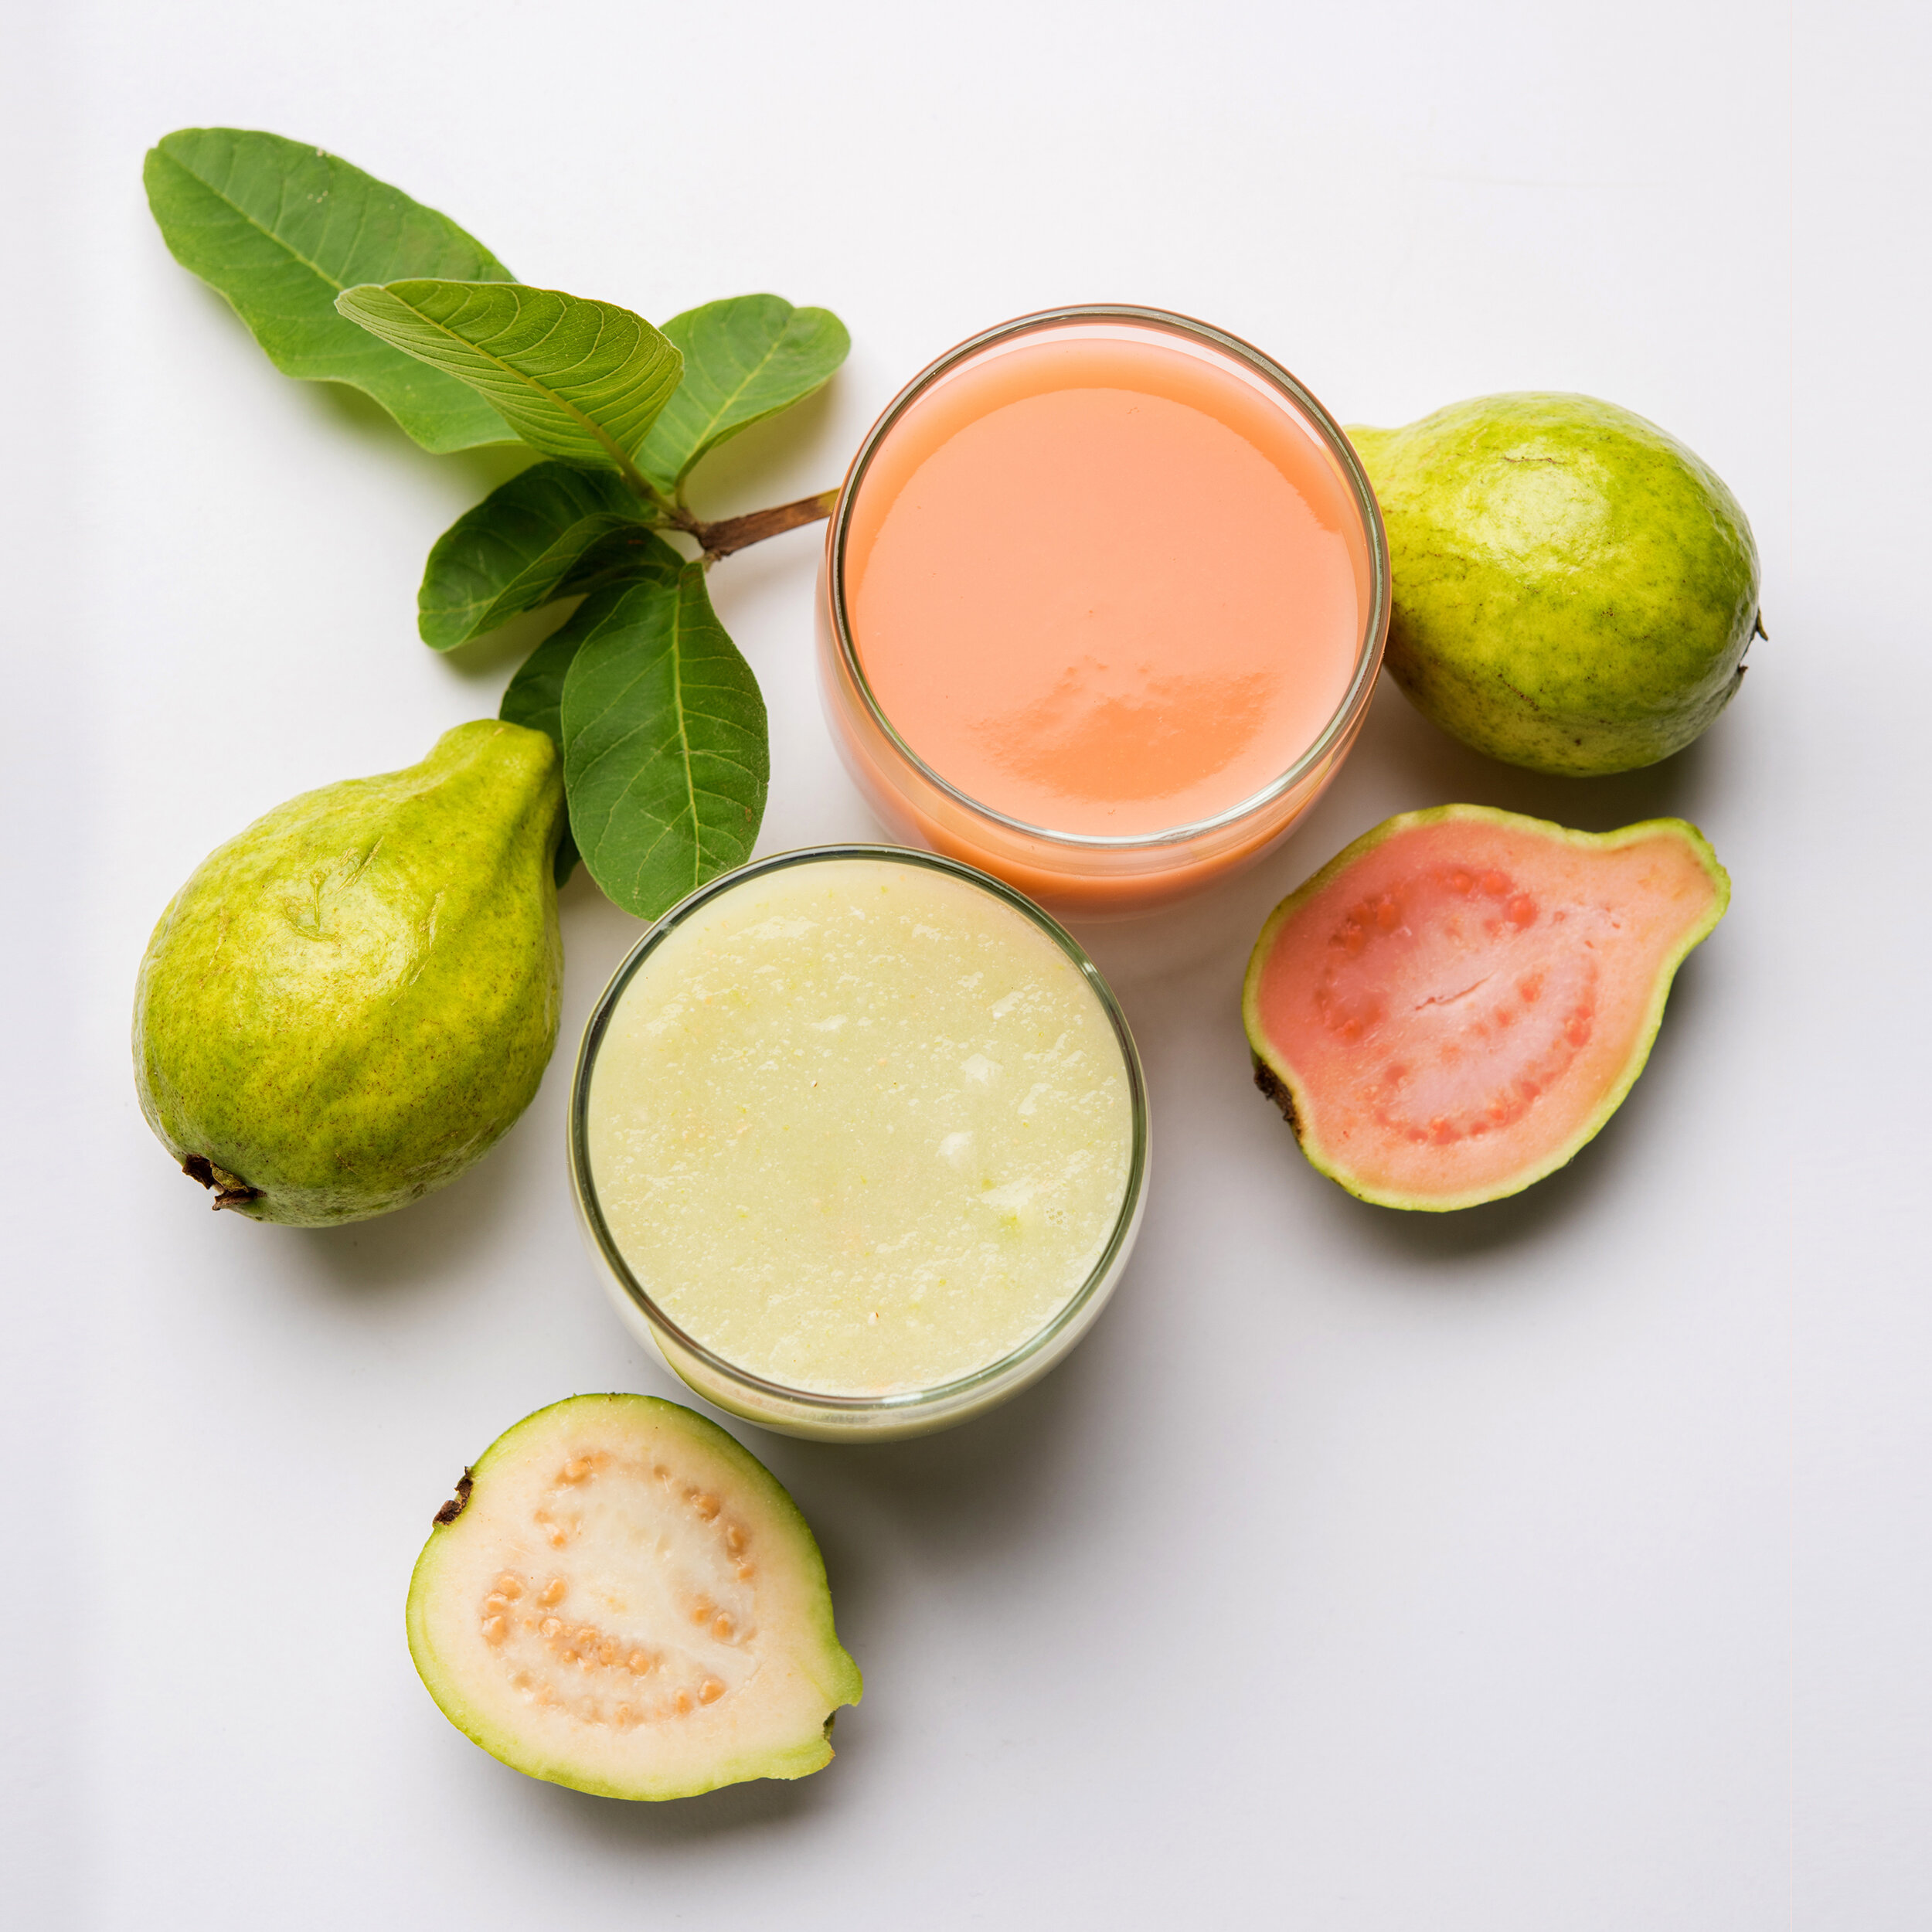 Passion fruit orange guava перевод